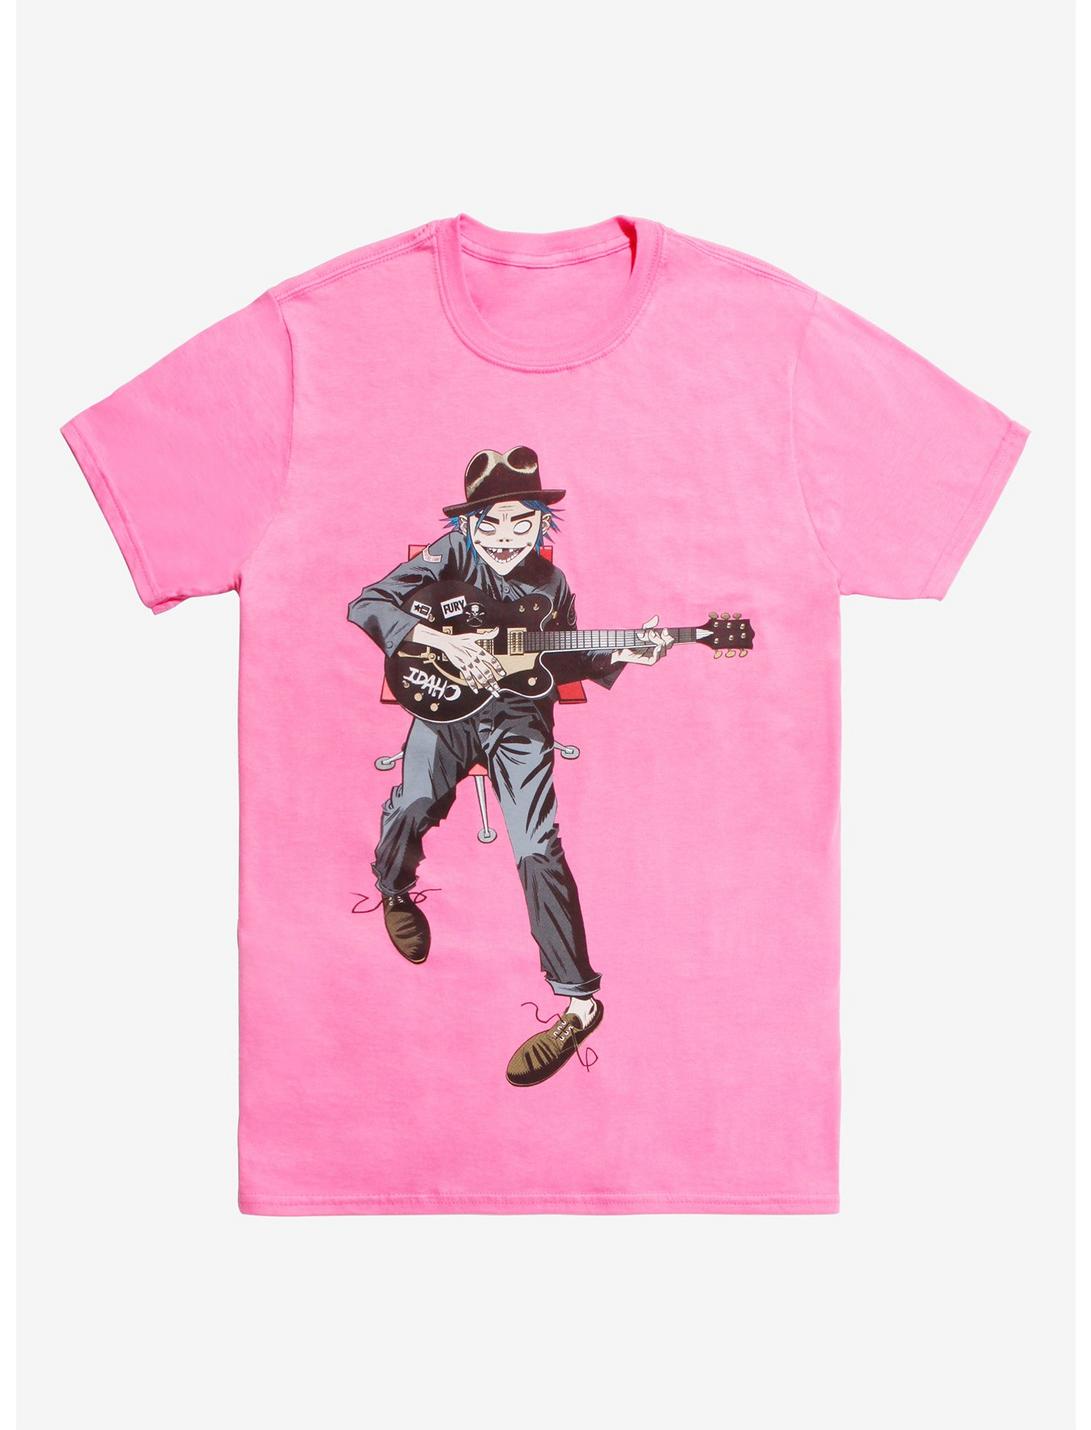 Gorillaz 2D & Guitar T-Shirt, PINK, hi-res